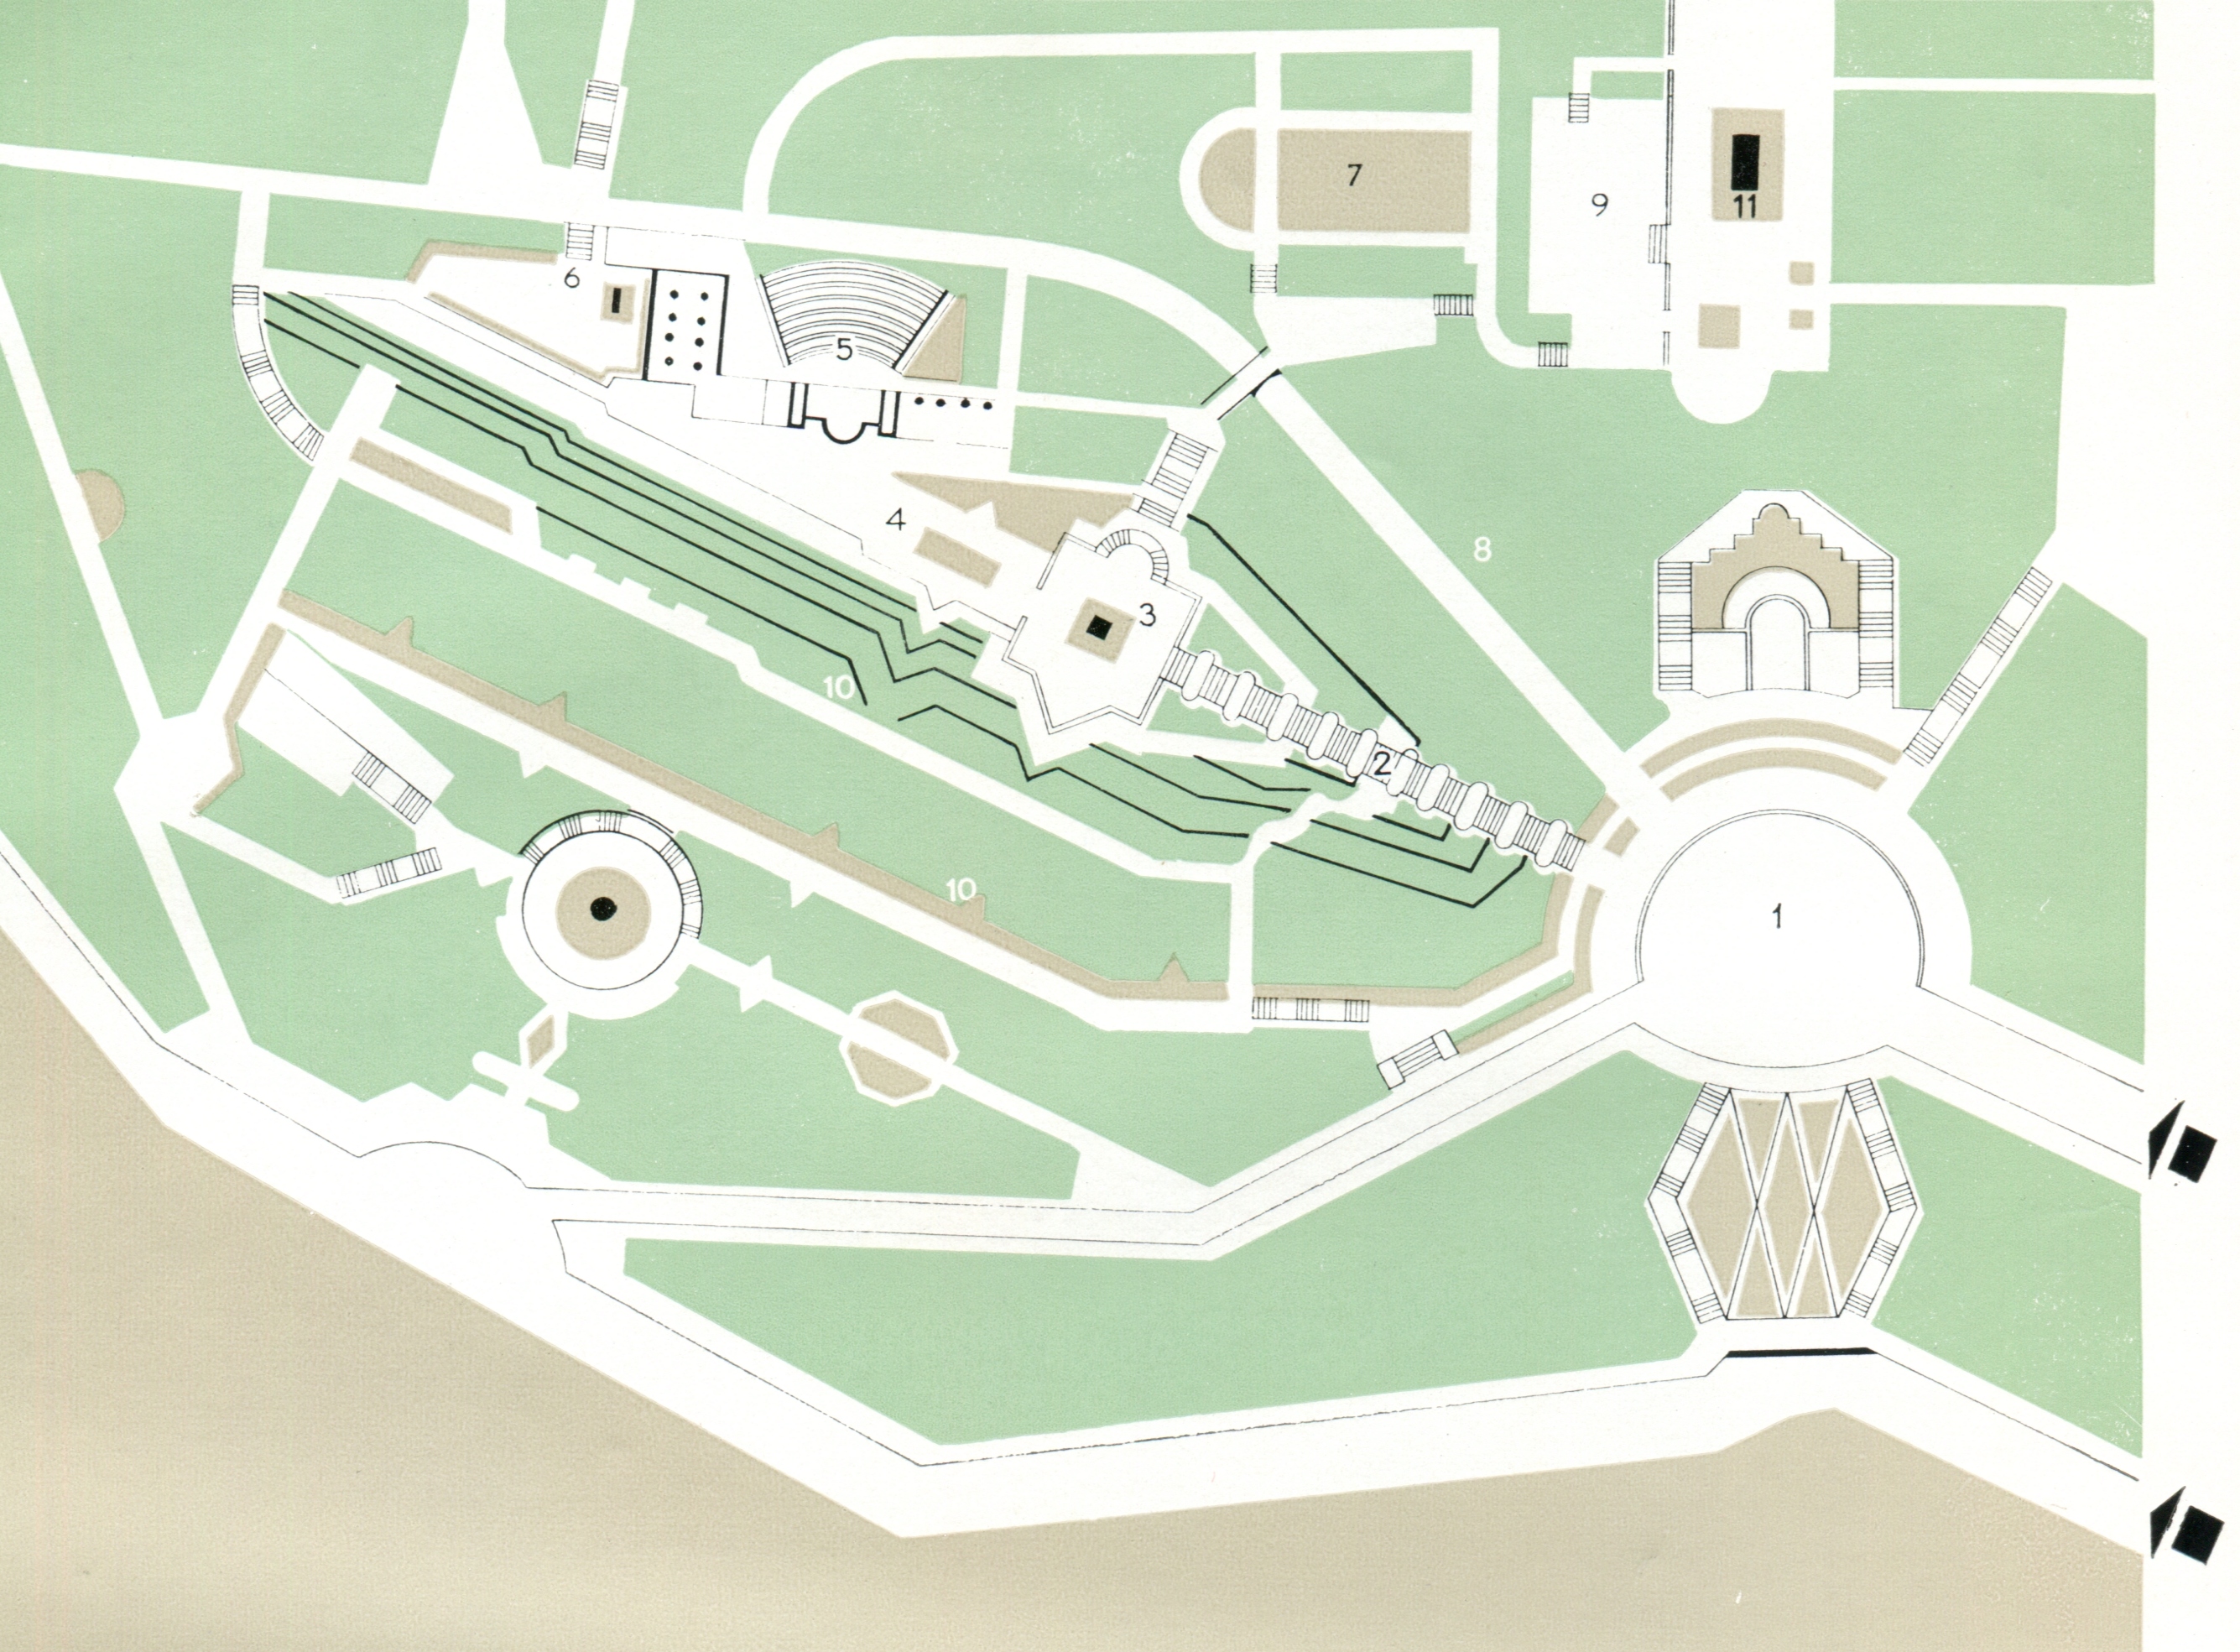 Нагорный парк в Баку. Схематический план.